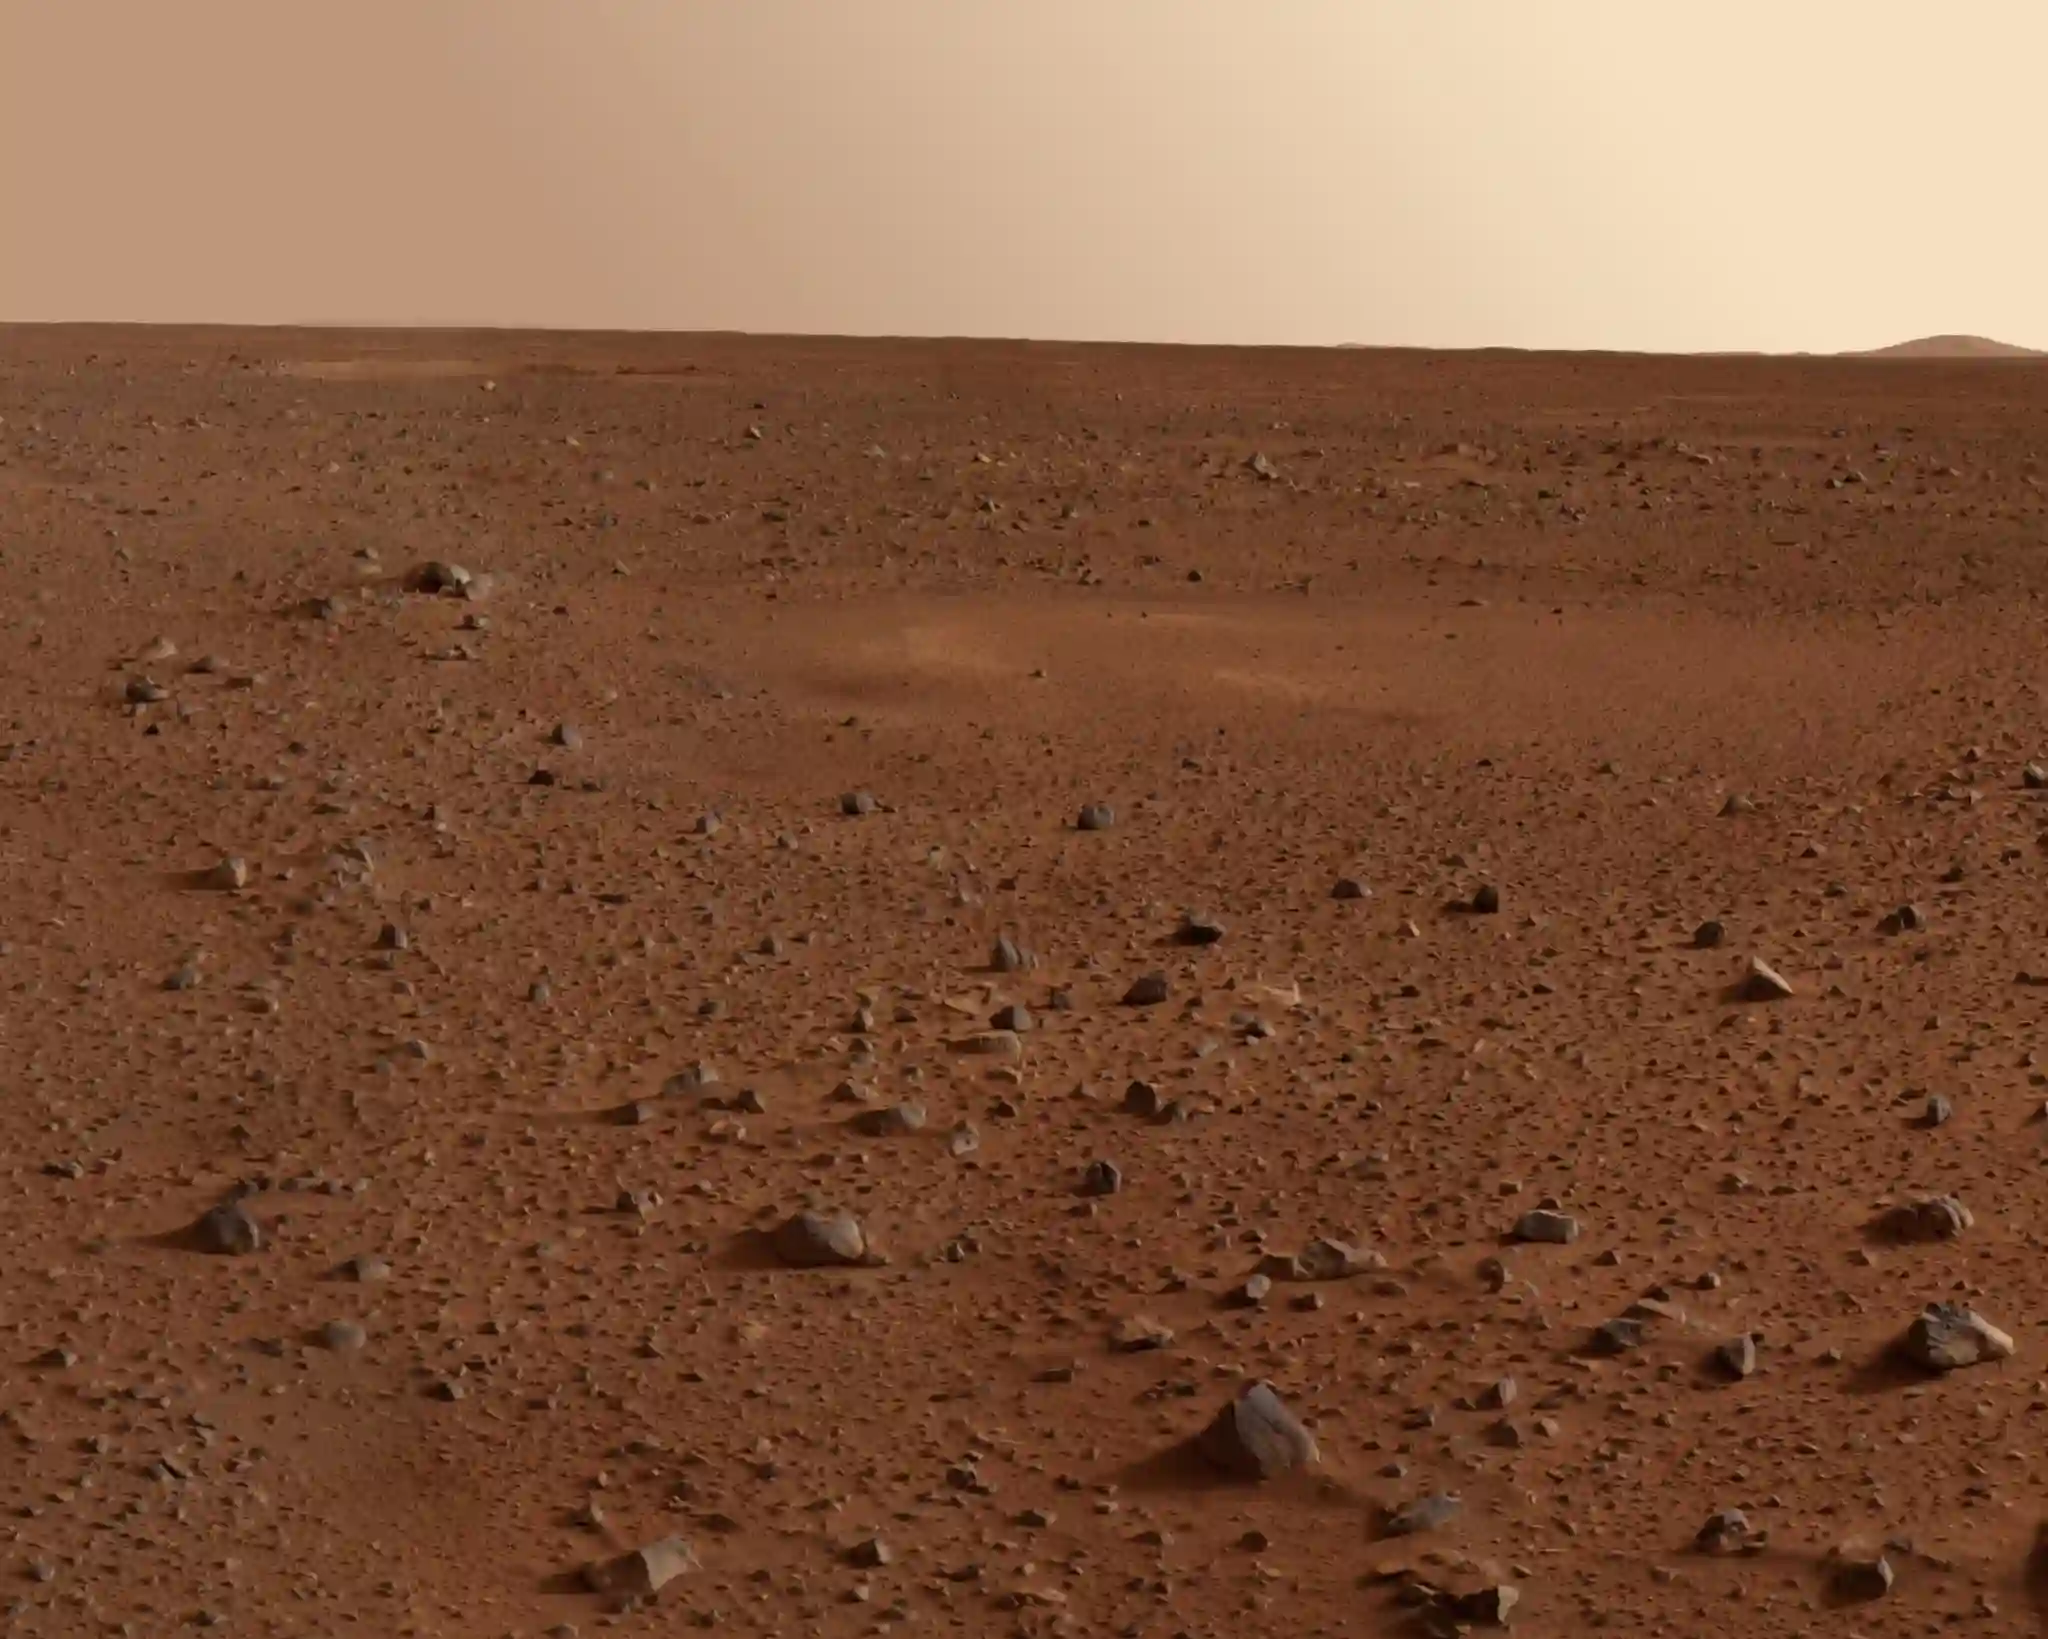 Näme üçin Marsa uçmaklyk - samsyk pikir?